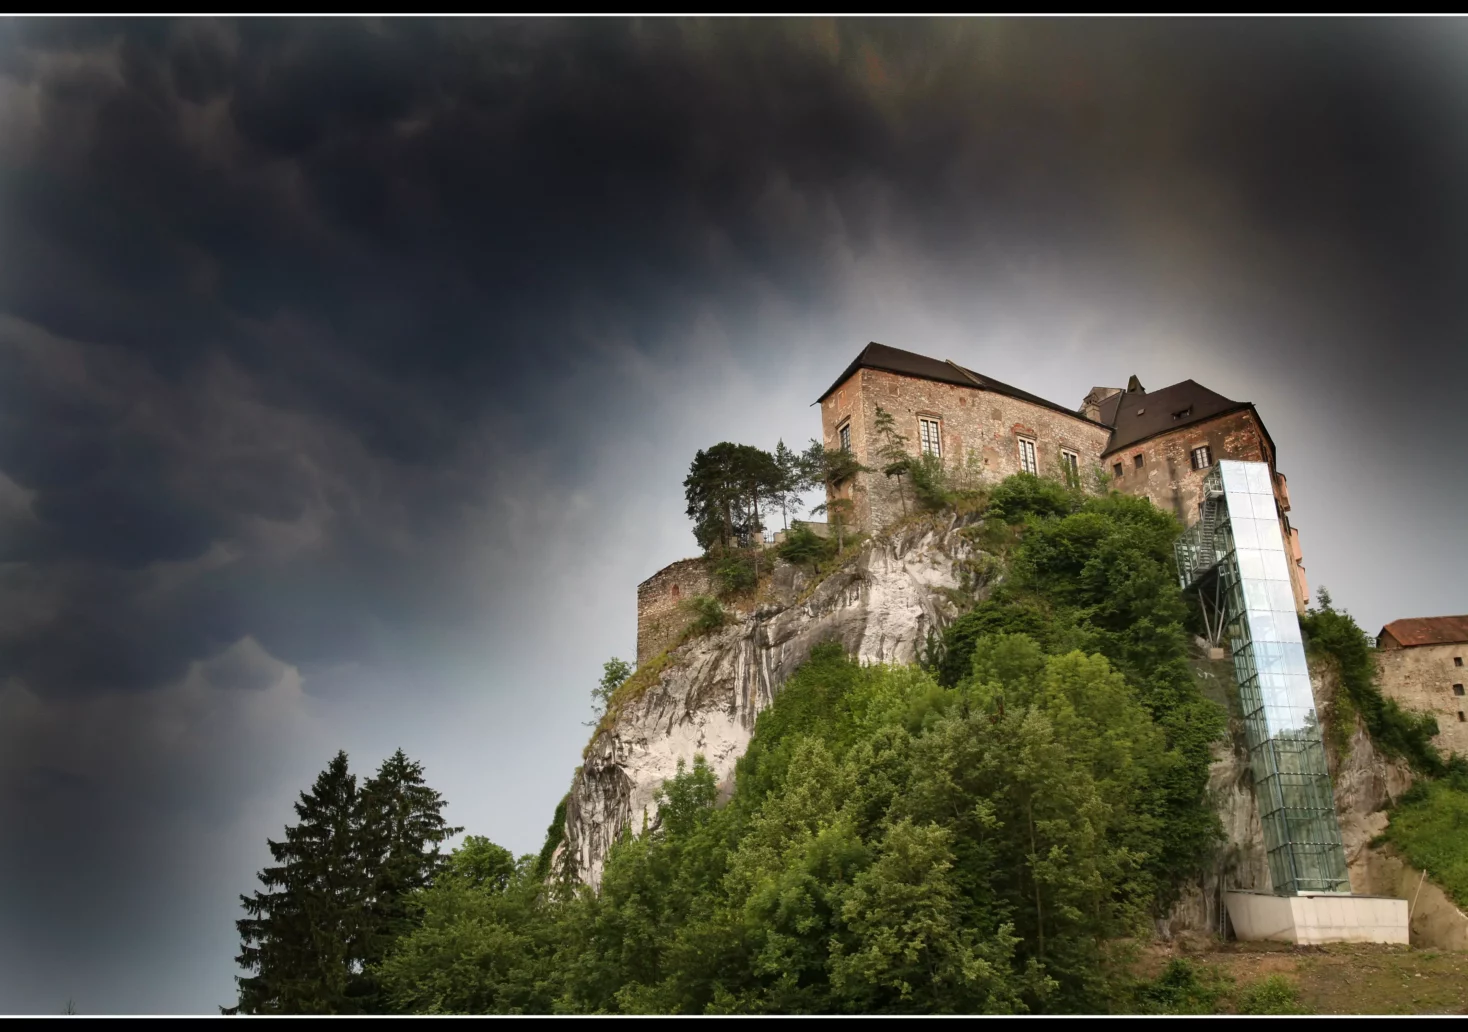 Bild auf 5min.at zeigt die Burg Rabenstein.